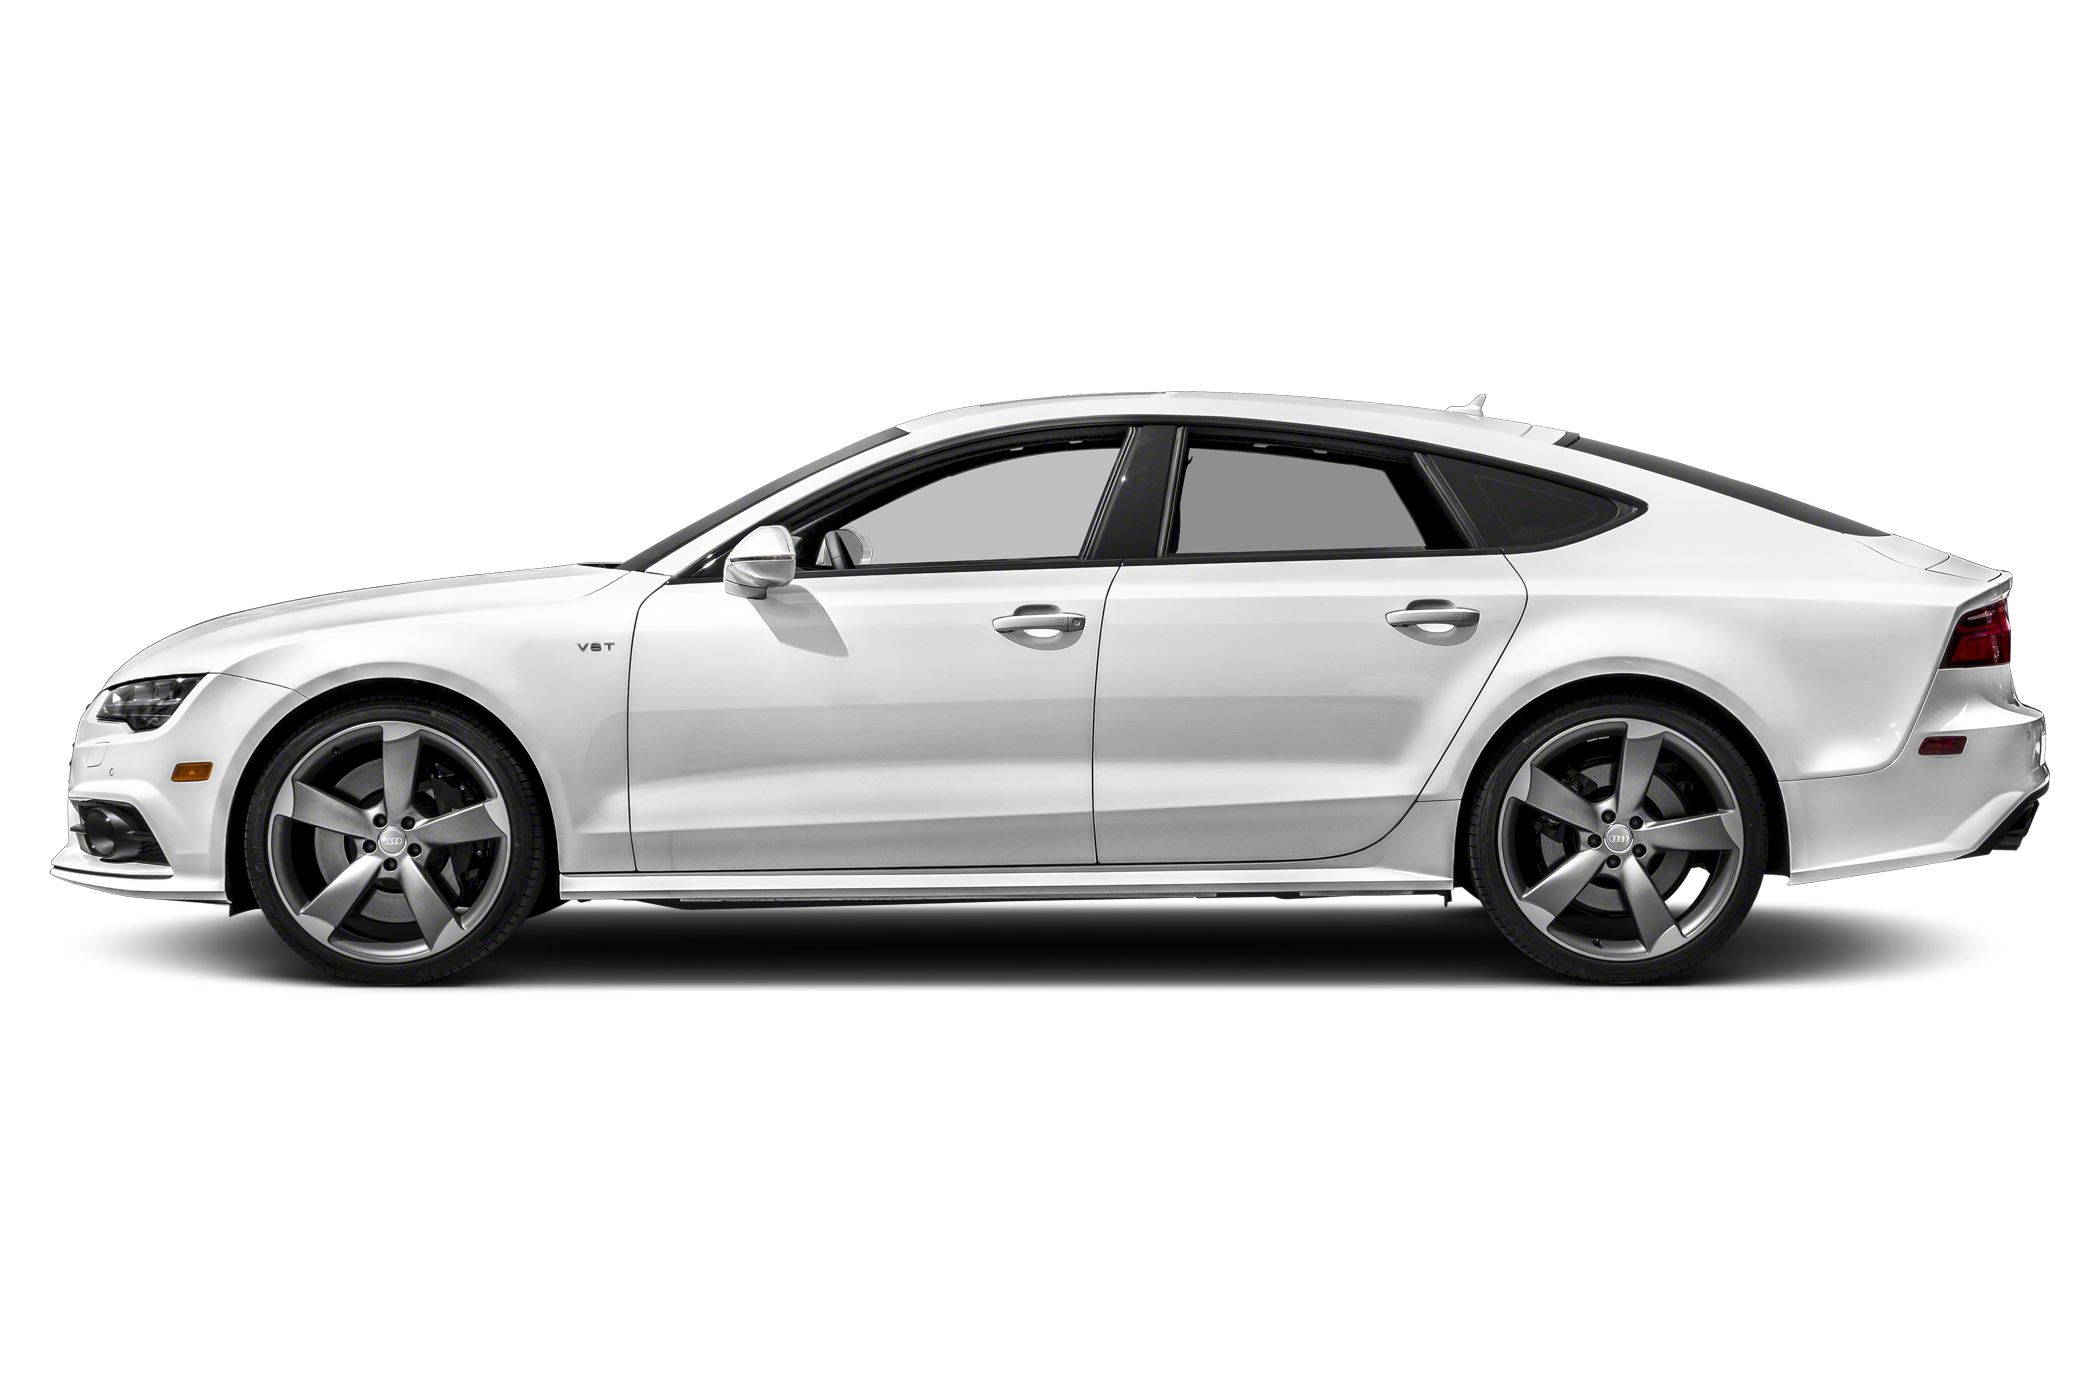 2016 Audi S7